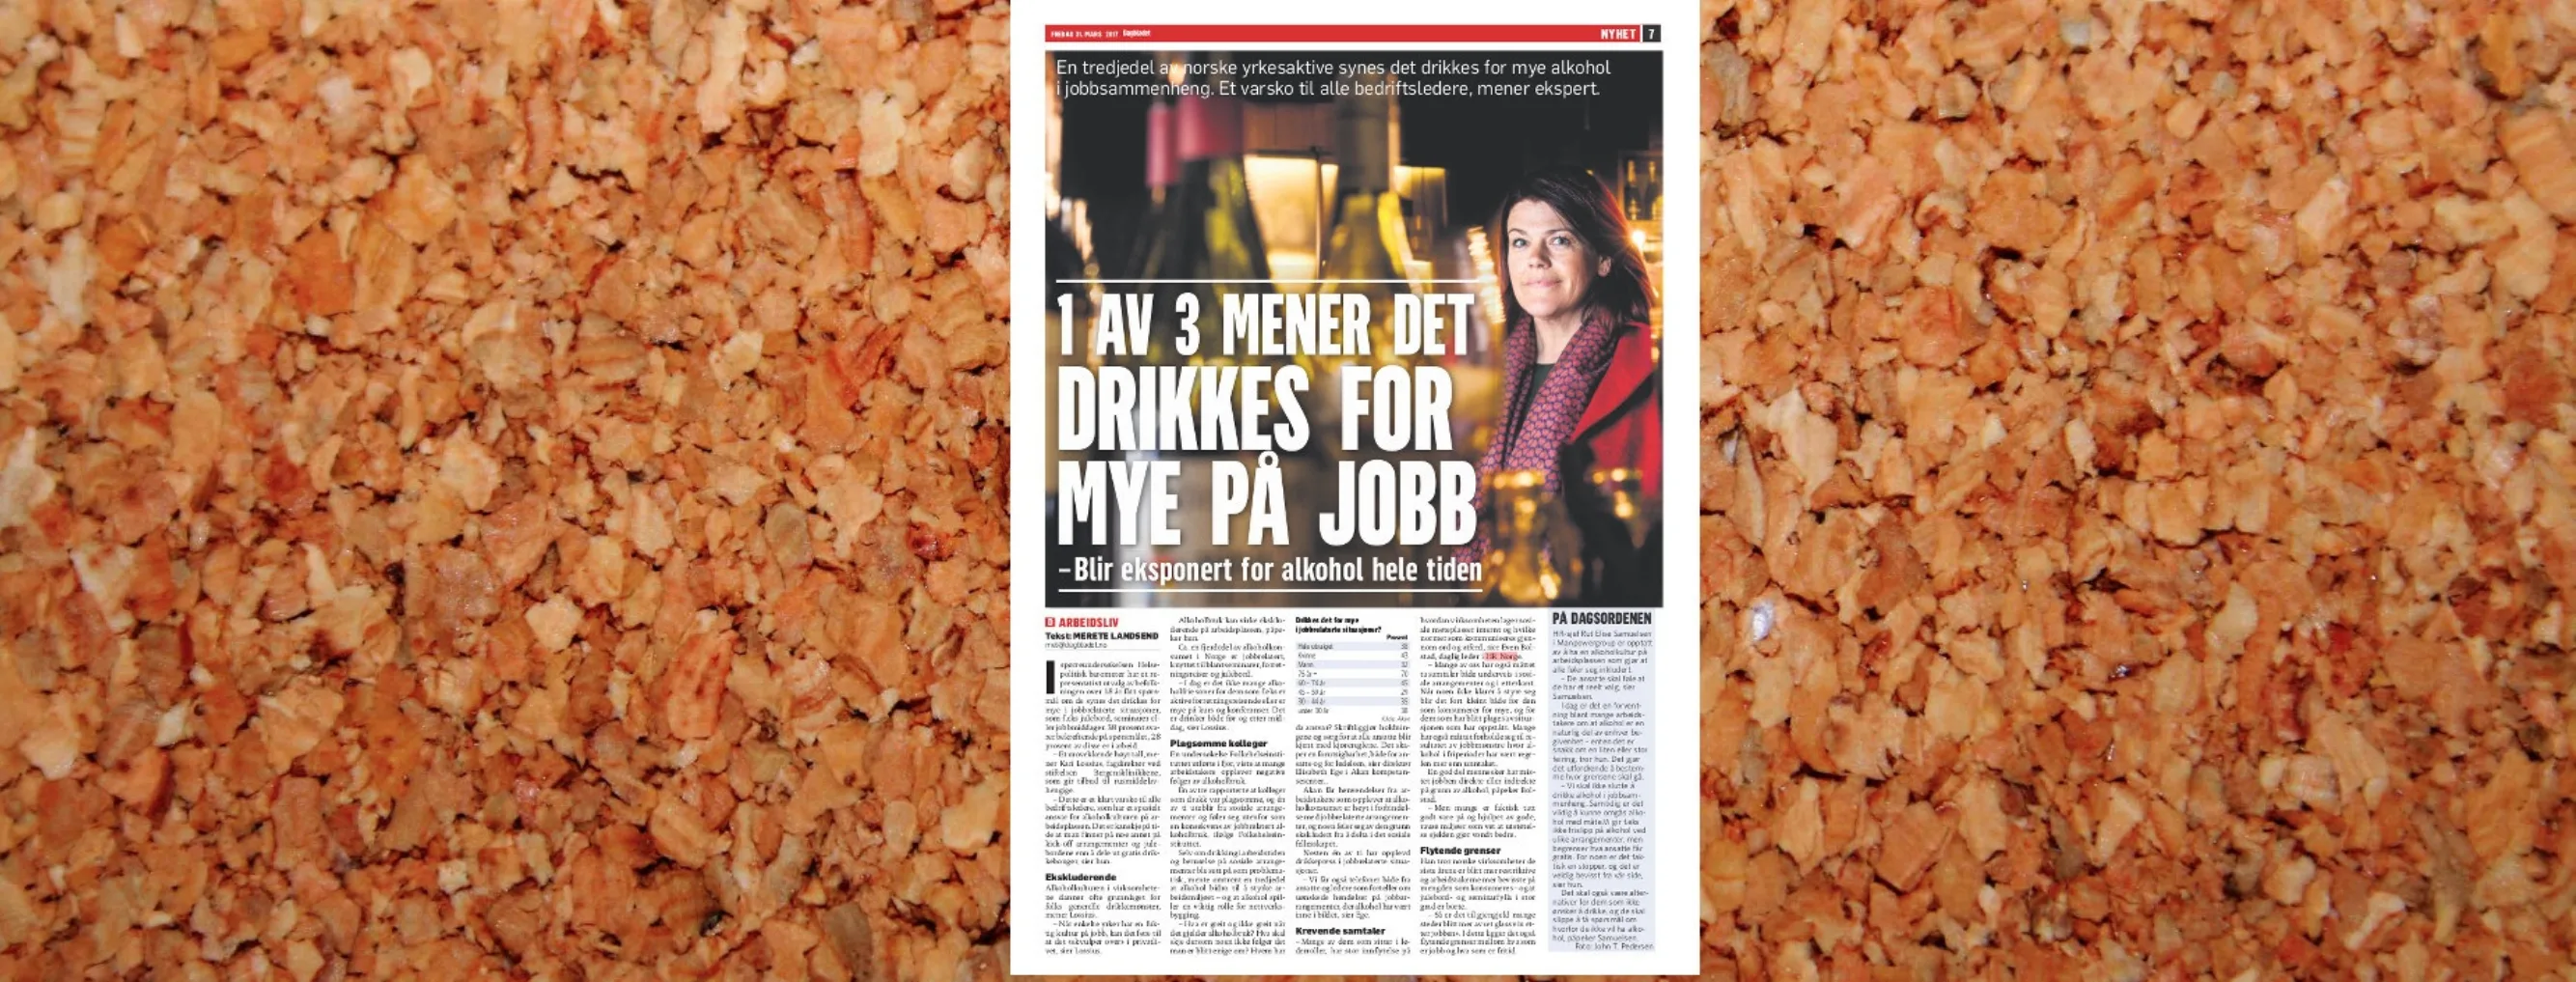 2017 03 31 Dagbladet Alkohol paa jobb oppslag